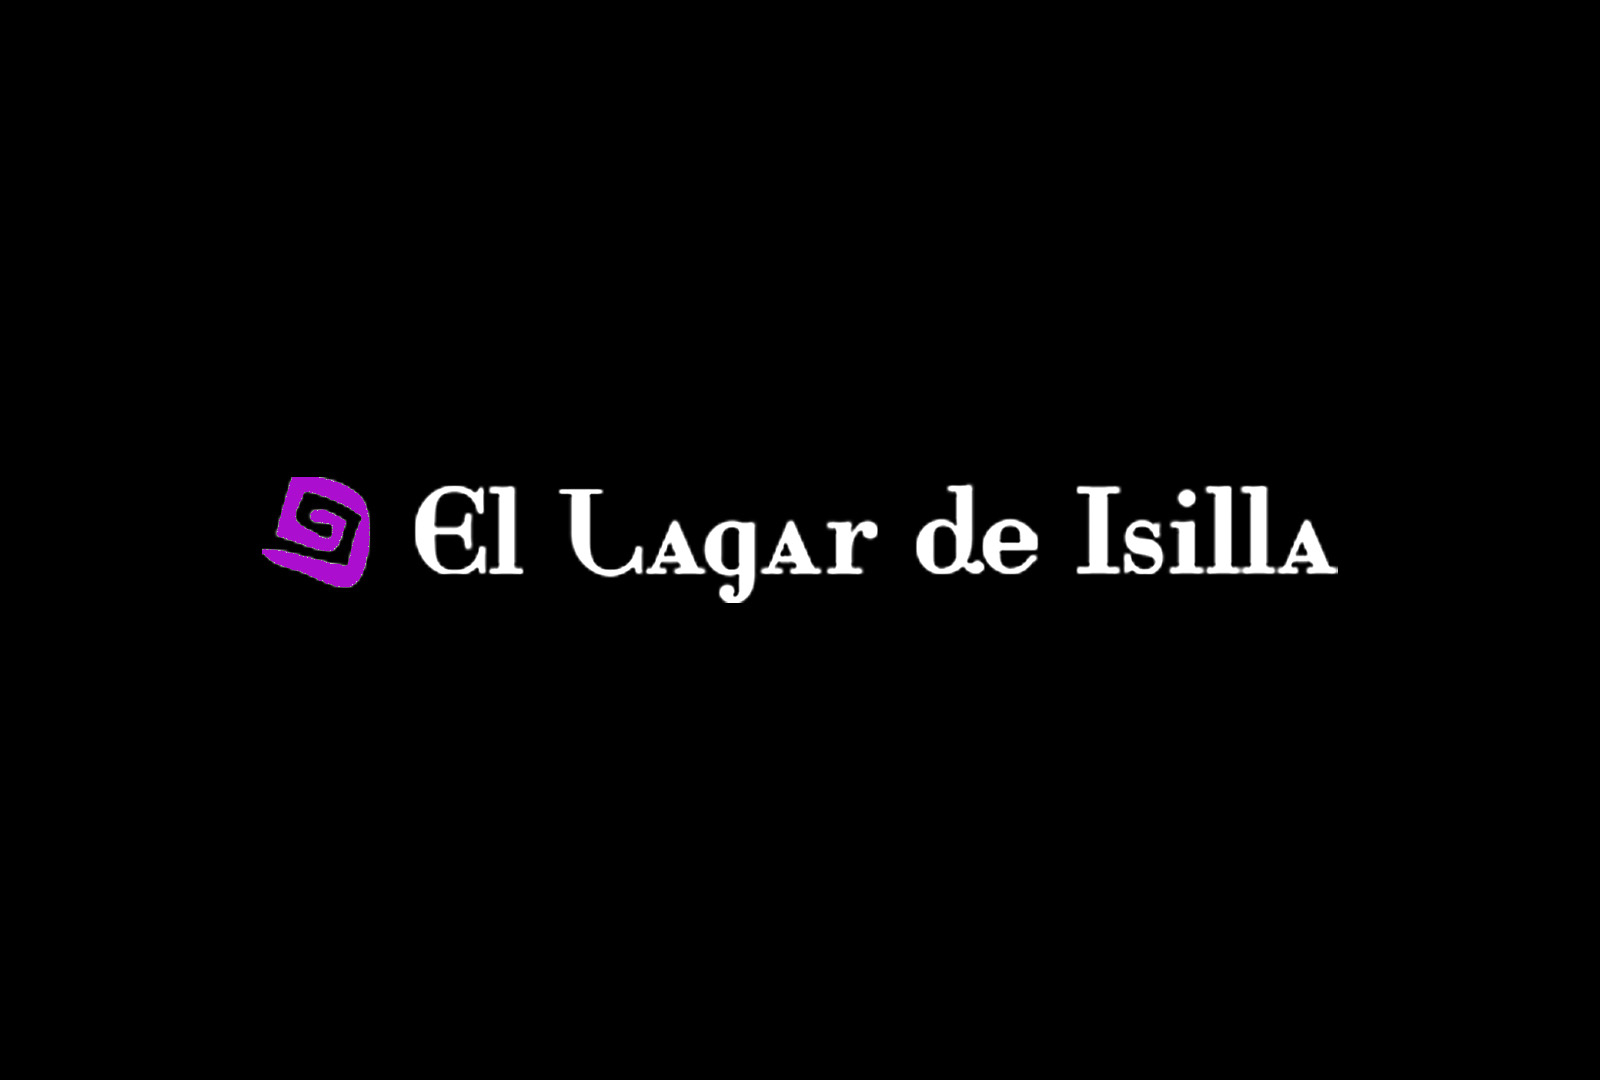 Lagar de Isilla, finalista del certamen de España de Sumilleres. - VINOS DIFERENTES